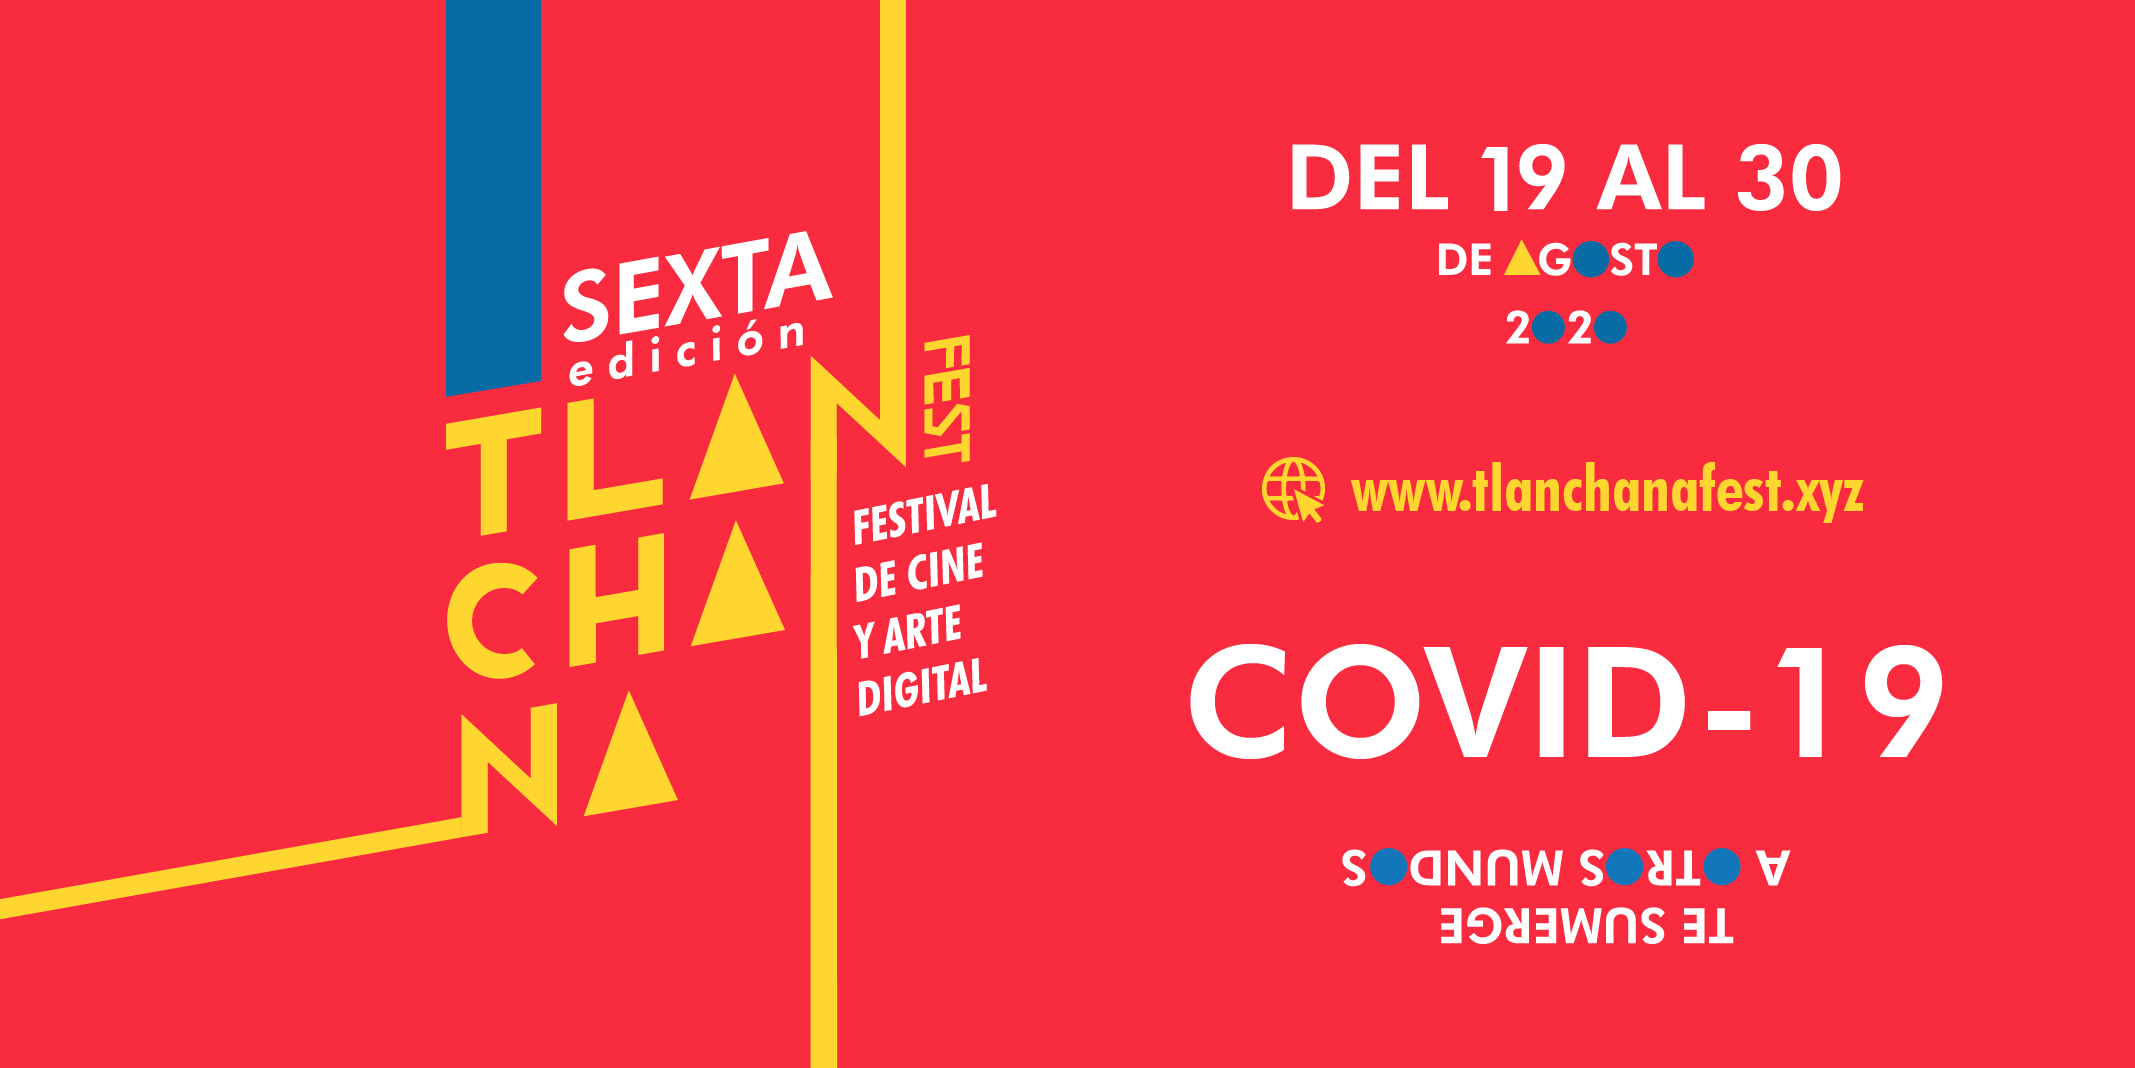 Hoy incia el Festival de Cine y Arte Digital: Tlanchana Fest